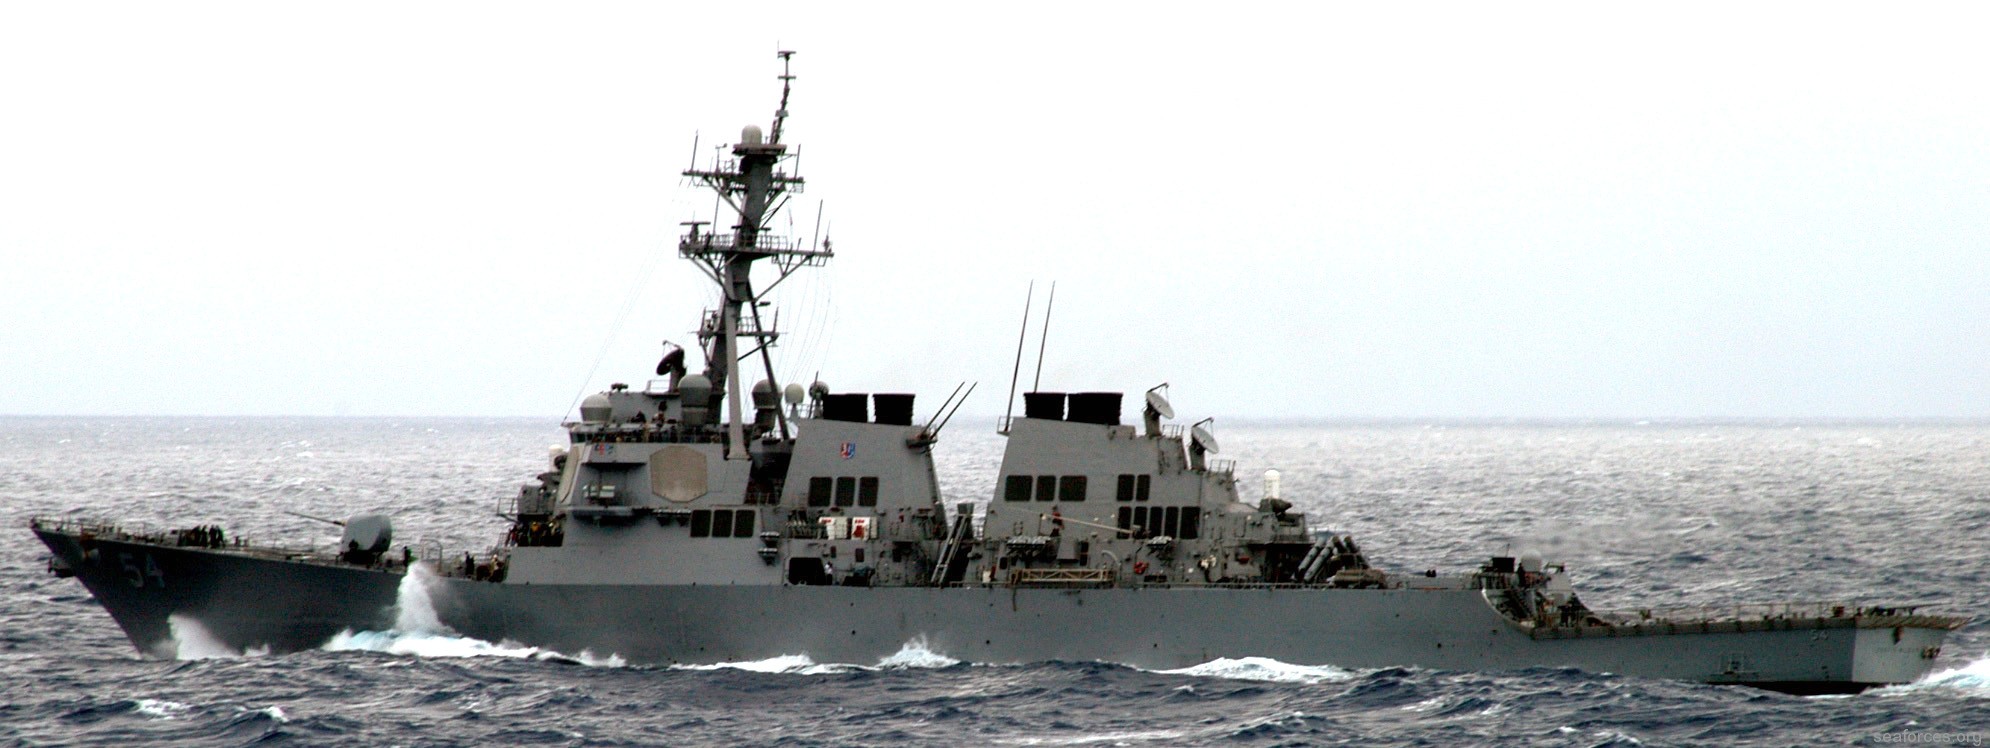 ddg-54 uss curtis wilbur destroyer us navy 82